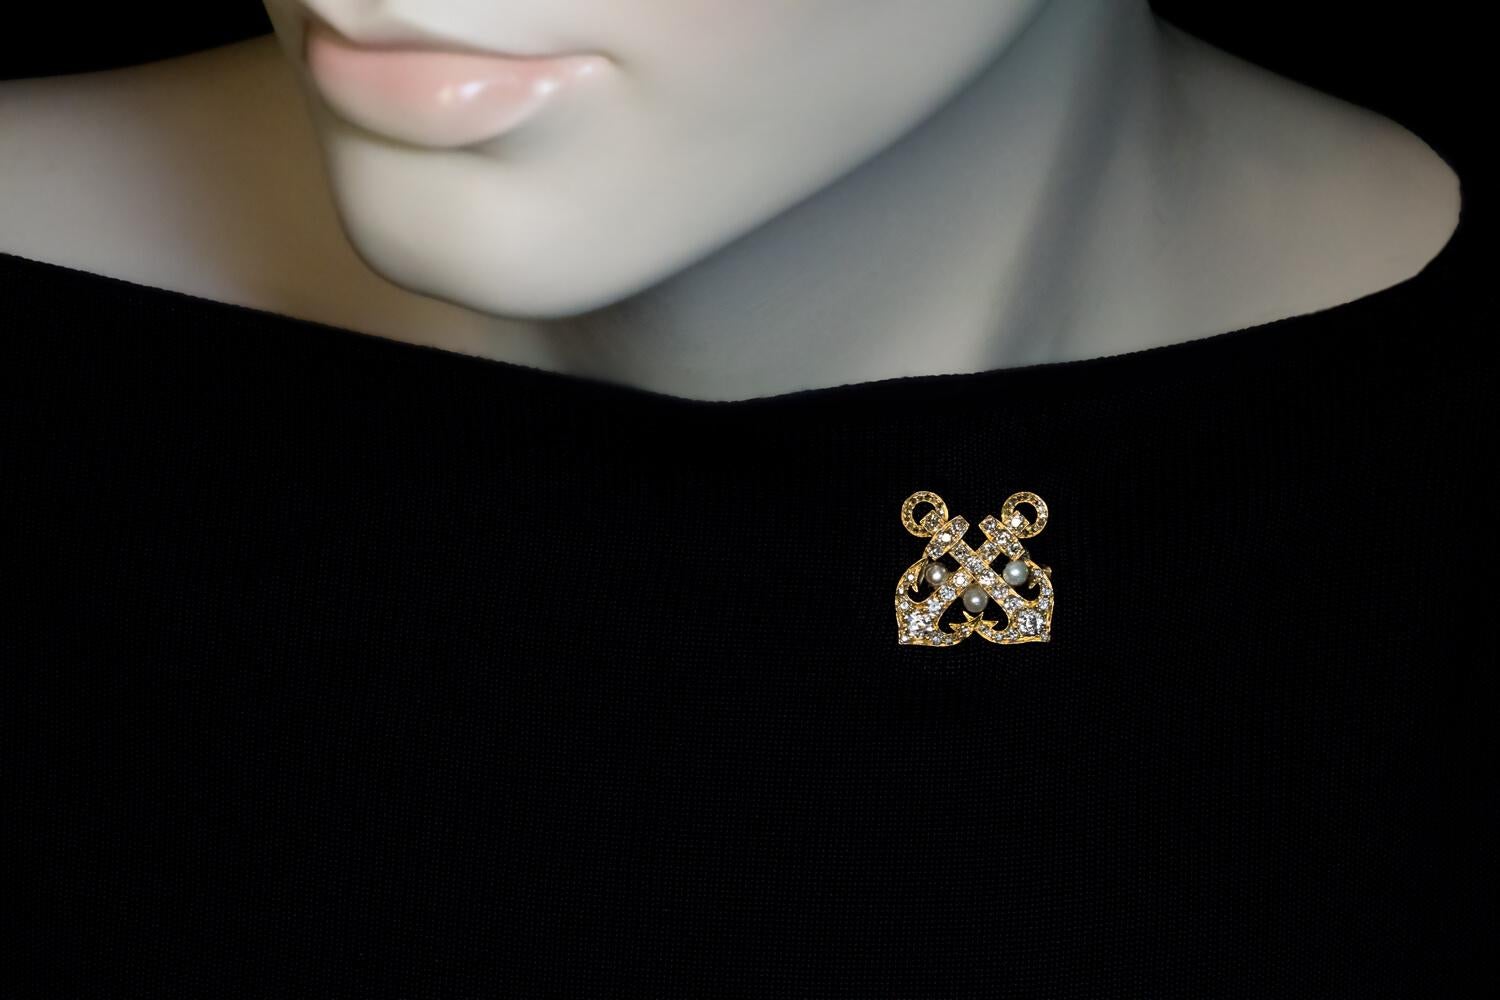 Circa 1890s

La broche/épingle en or jaune 14 carats est conçue comme deux ancres croisées qui sont embellies par des diamants de taille ancienne européenne, ancienne mine et rose, et sont rehaussées de trois perles.

Les ancres symbolisent l'amour